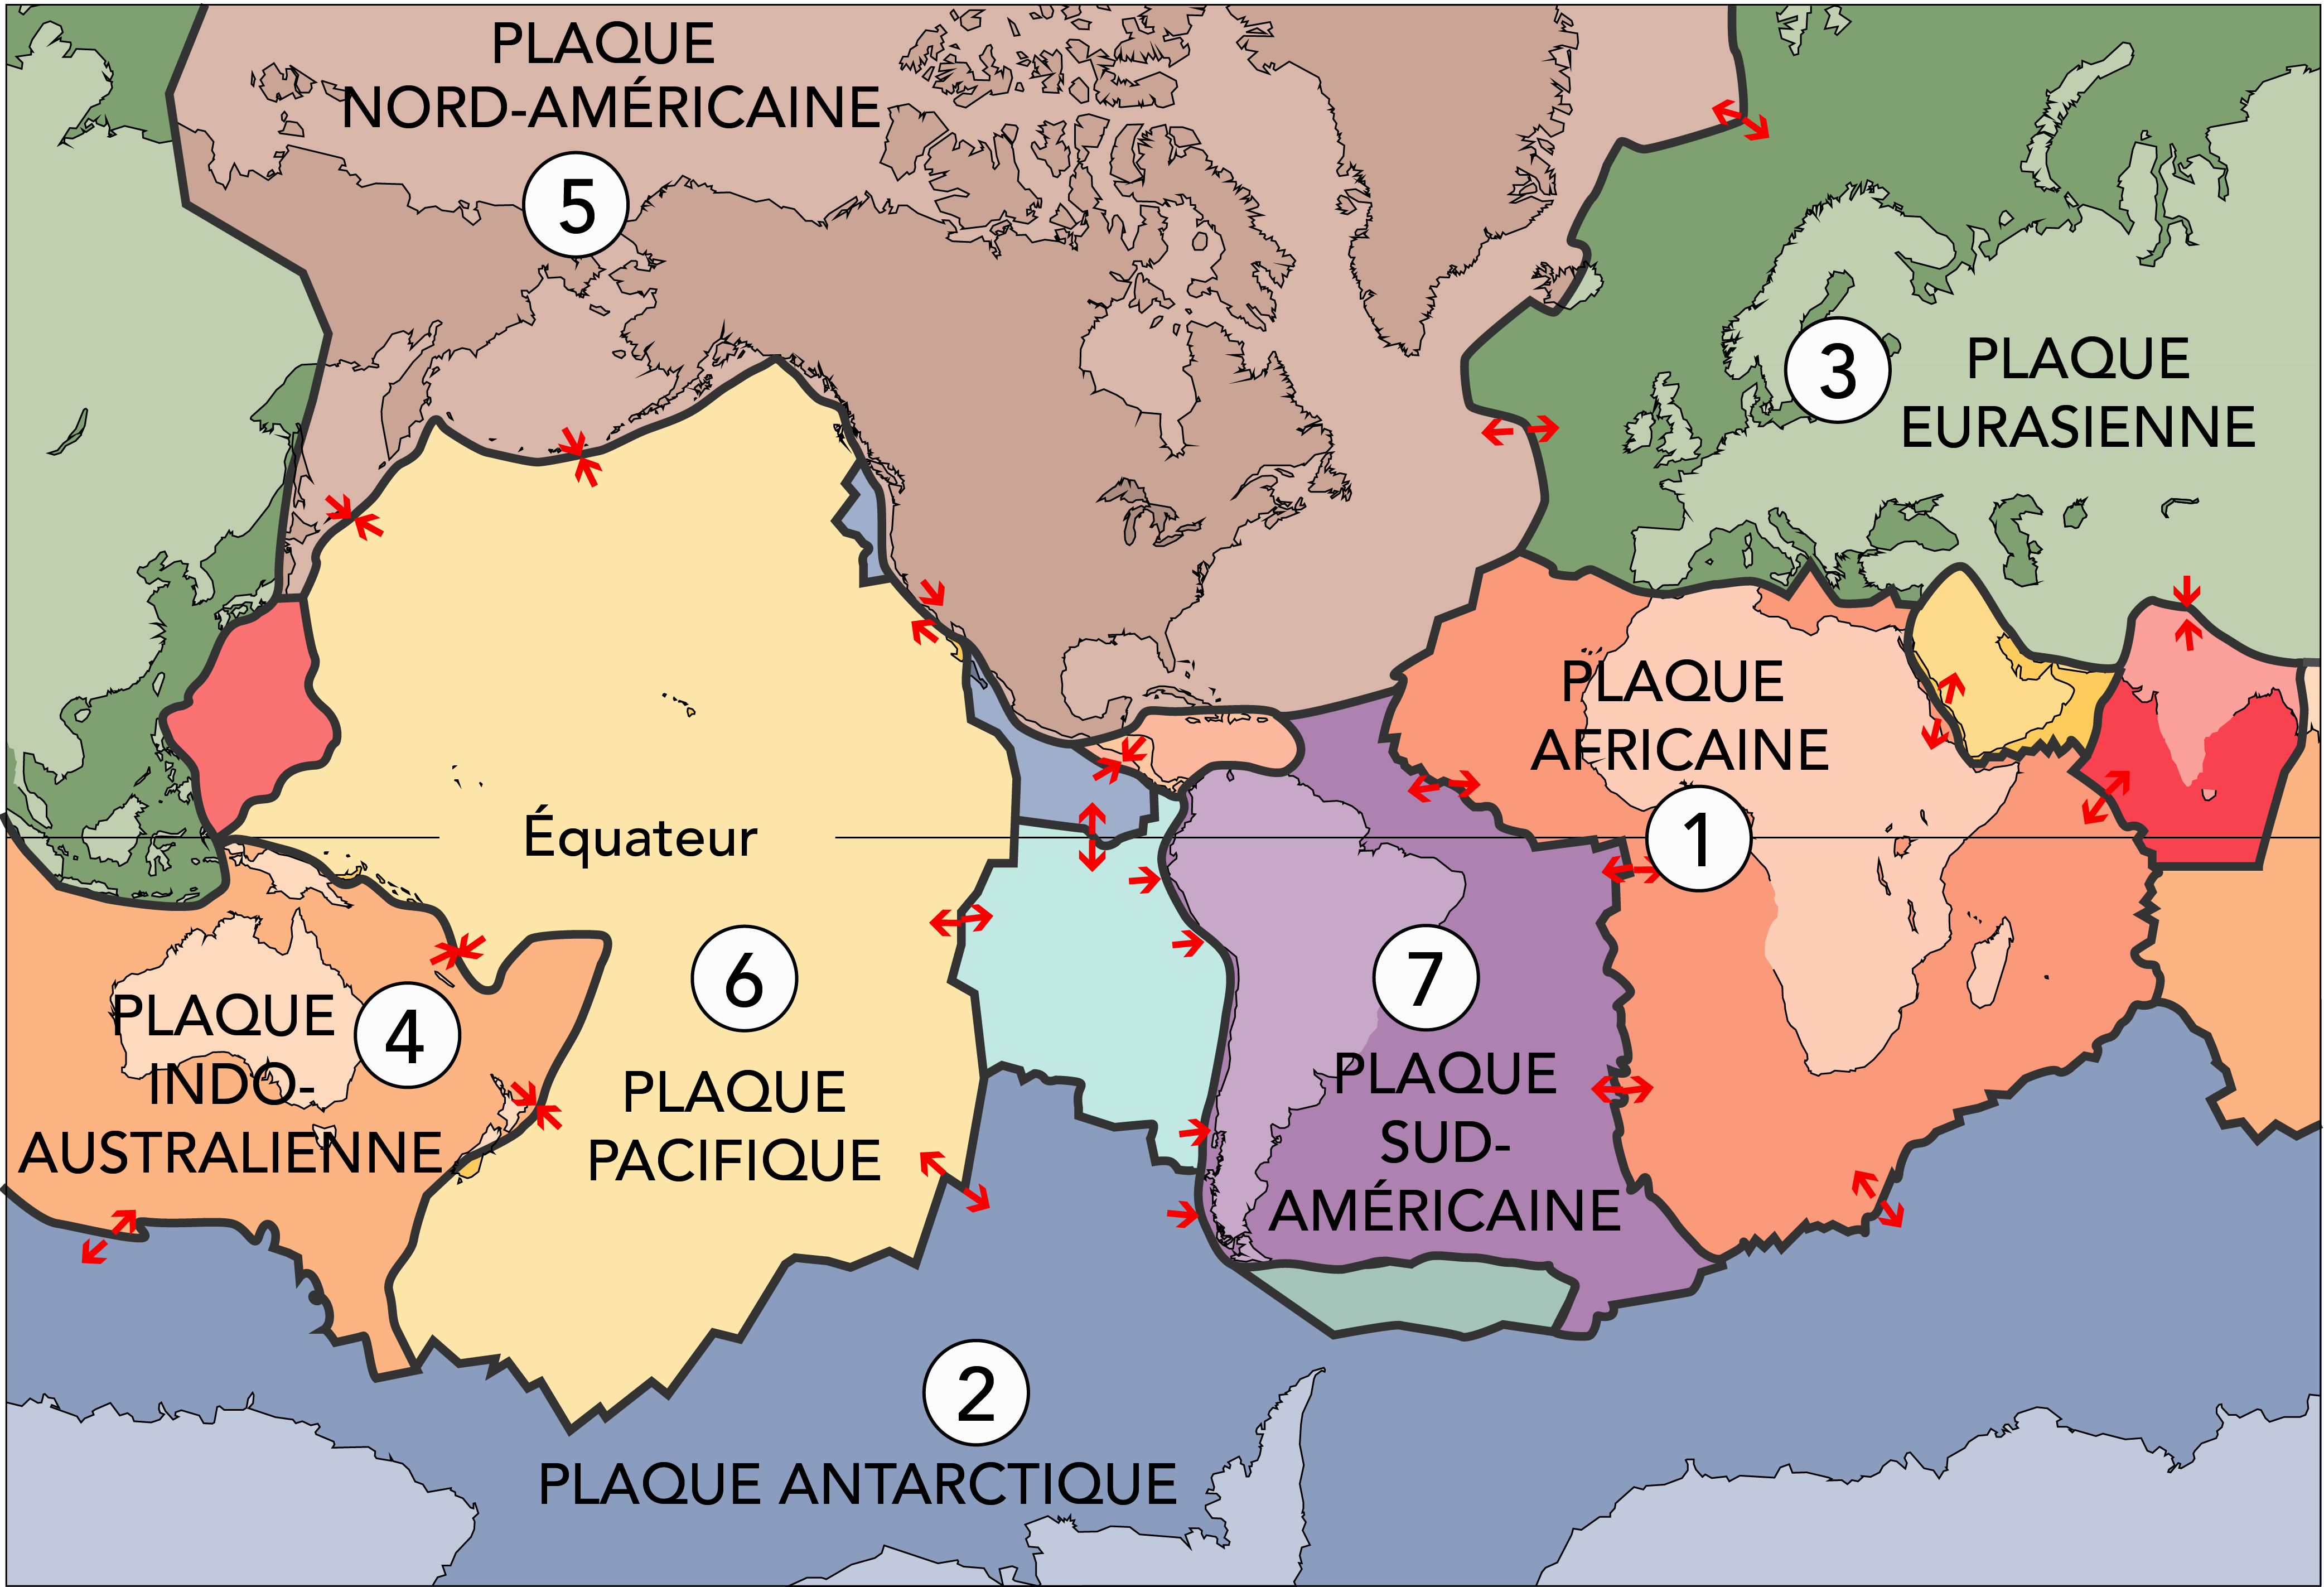 Une carte du monde est représentée avec des sections numérotées et colorées pour illustrer les plaques tectoniques.